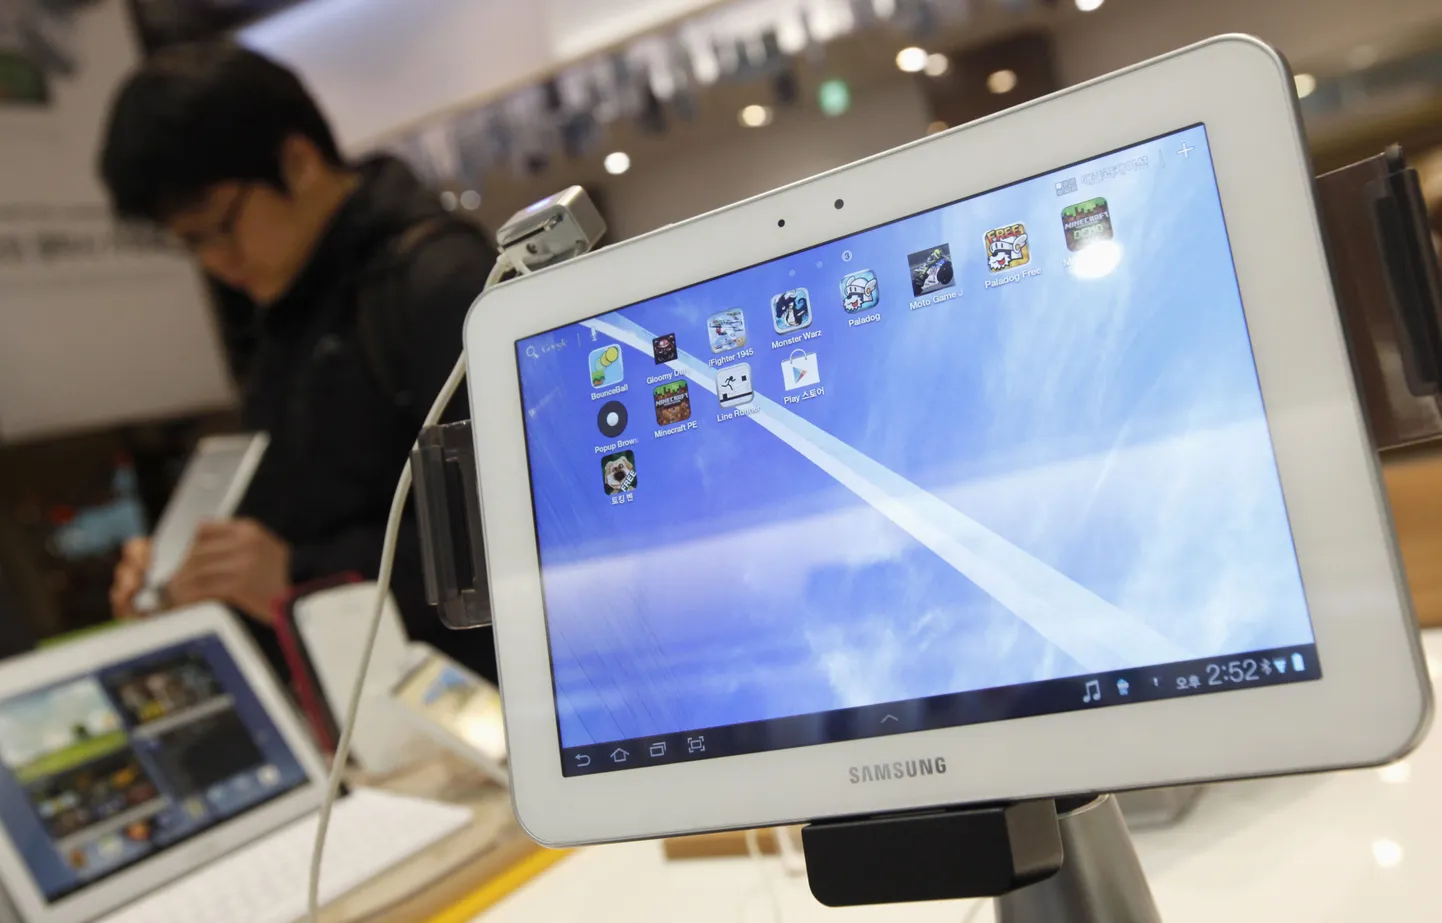 Viimase poolaasta ostetuim tahvelarvuti Eestis oli Samsung Galaxy Tab2.